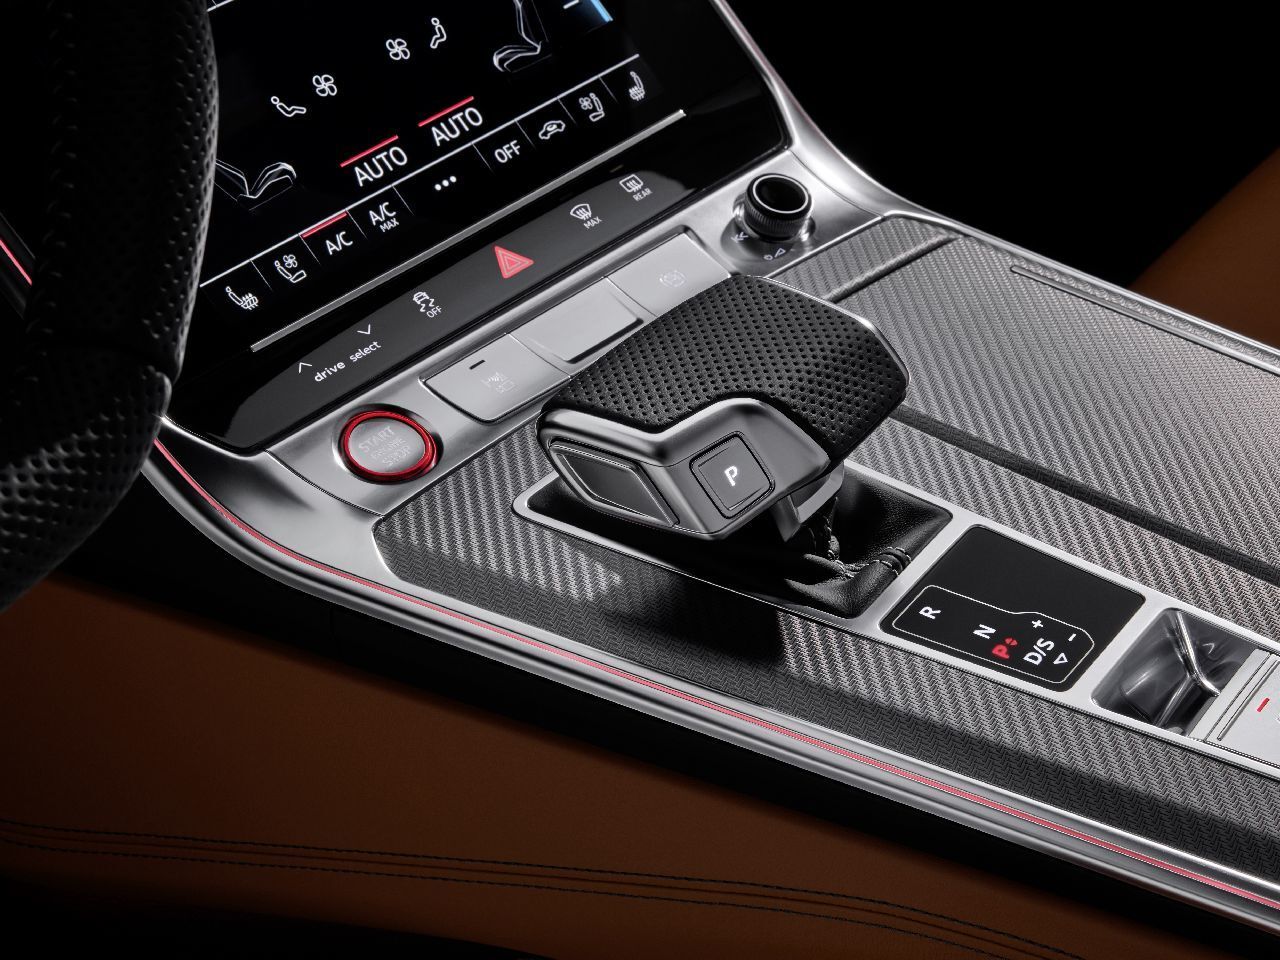 Audi RS6 (2019)